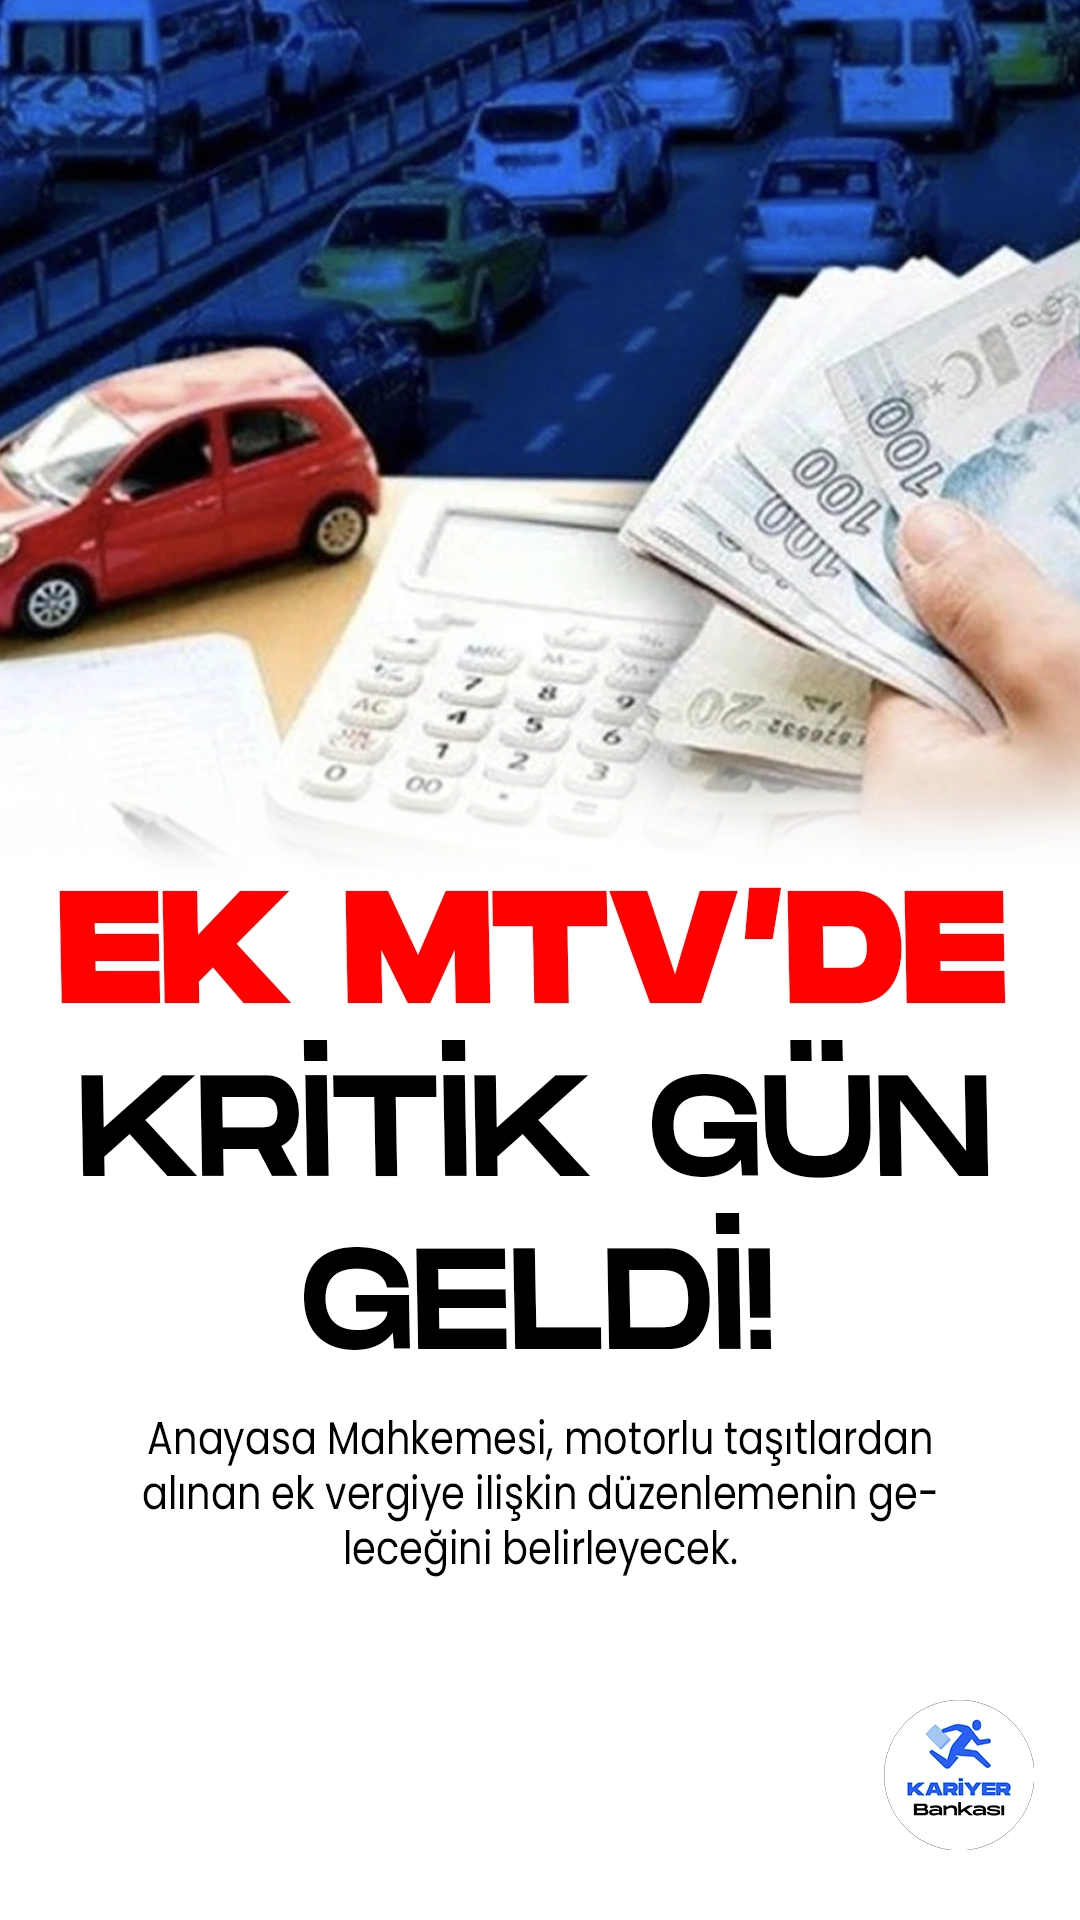 Ek MTV'nin Geleceği Bugün Belli Oluyor: Anayasa Mahkemesi Karar Verecek.Bugün, Türkiye'nin gündeminde kritik bir konu var: Anayasa Mahkemesi, motorlu taşıtlardan alınan ek vergiye ilişkin düzenlemenin geleceğini belirleyecek.